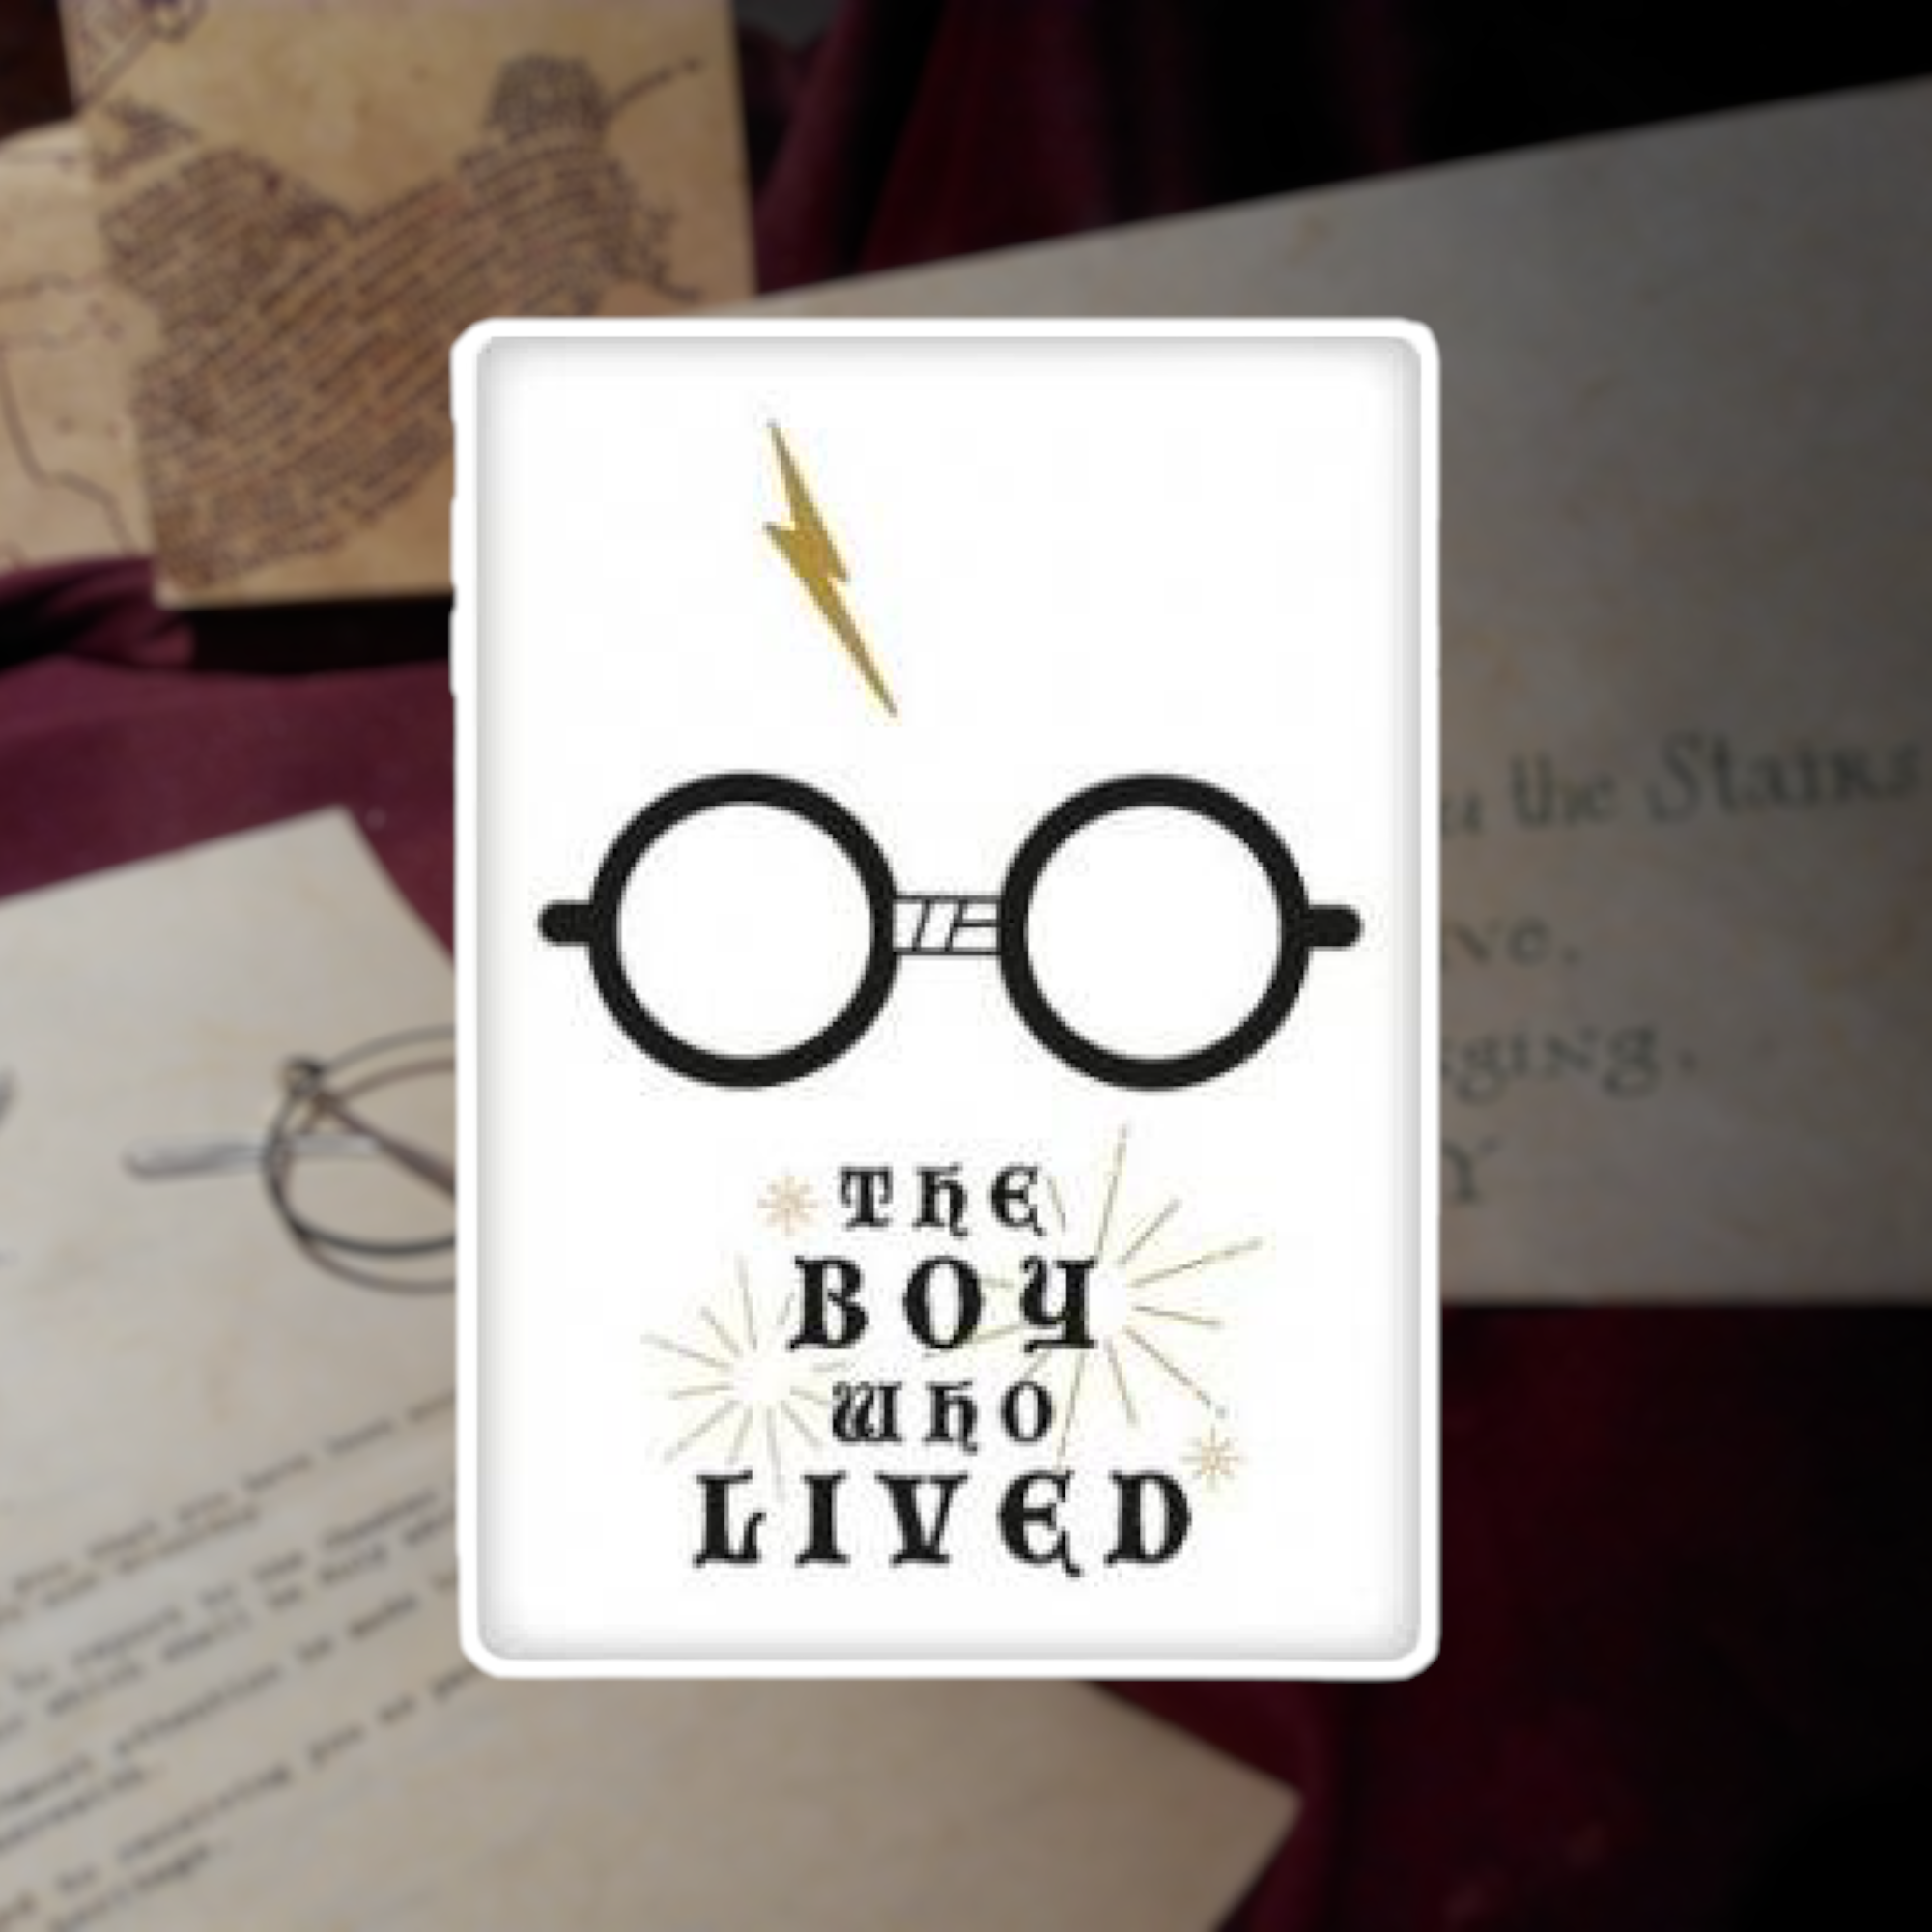 Warner Bros - Harry Potter : Magnet Boy who lived